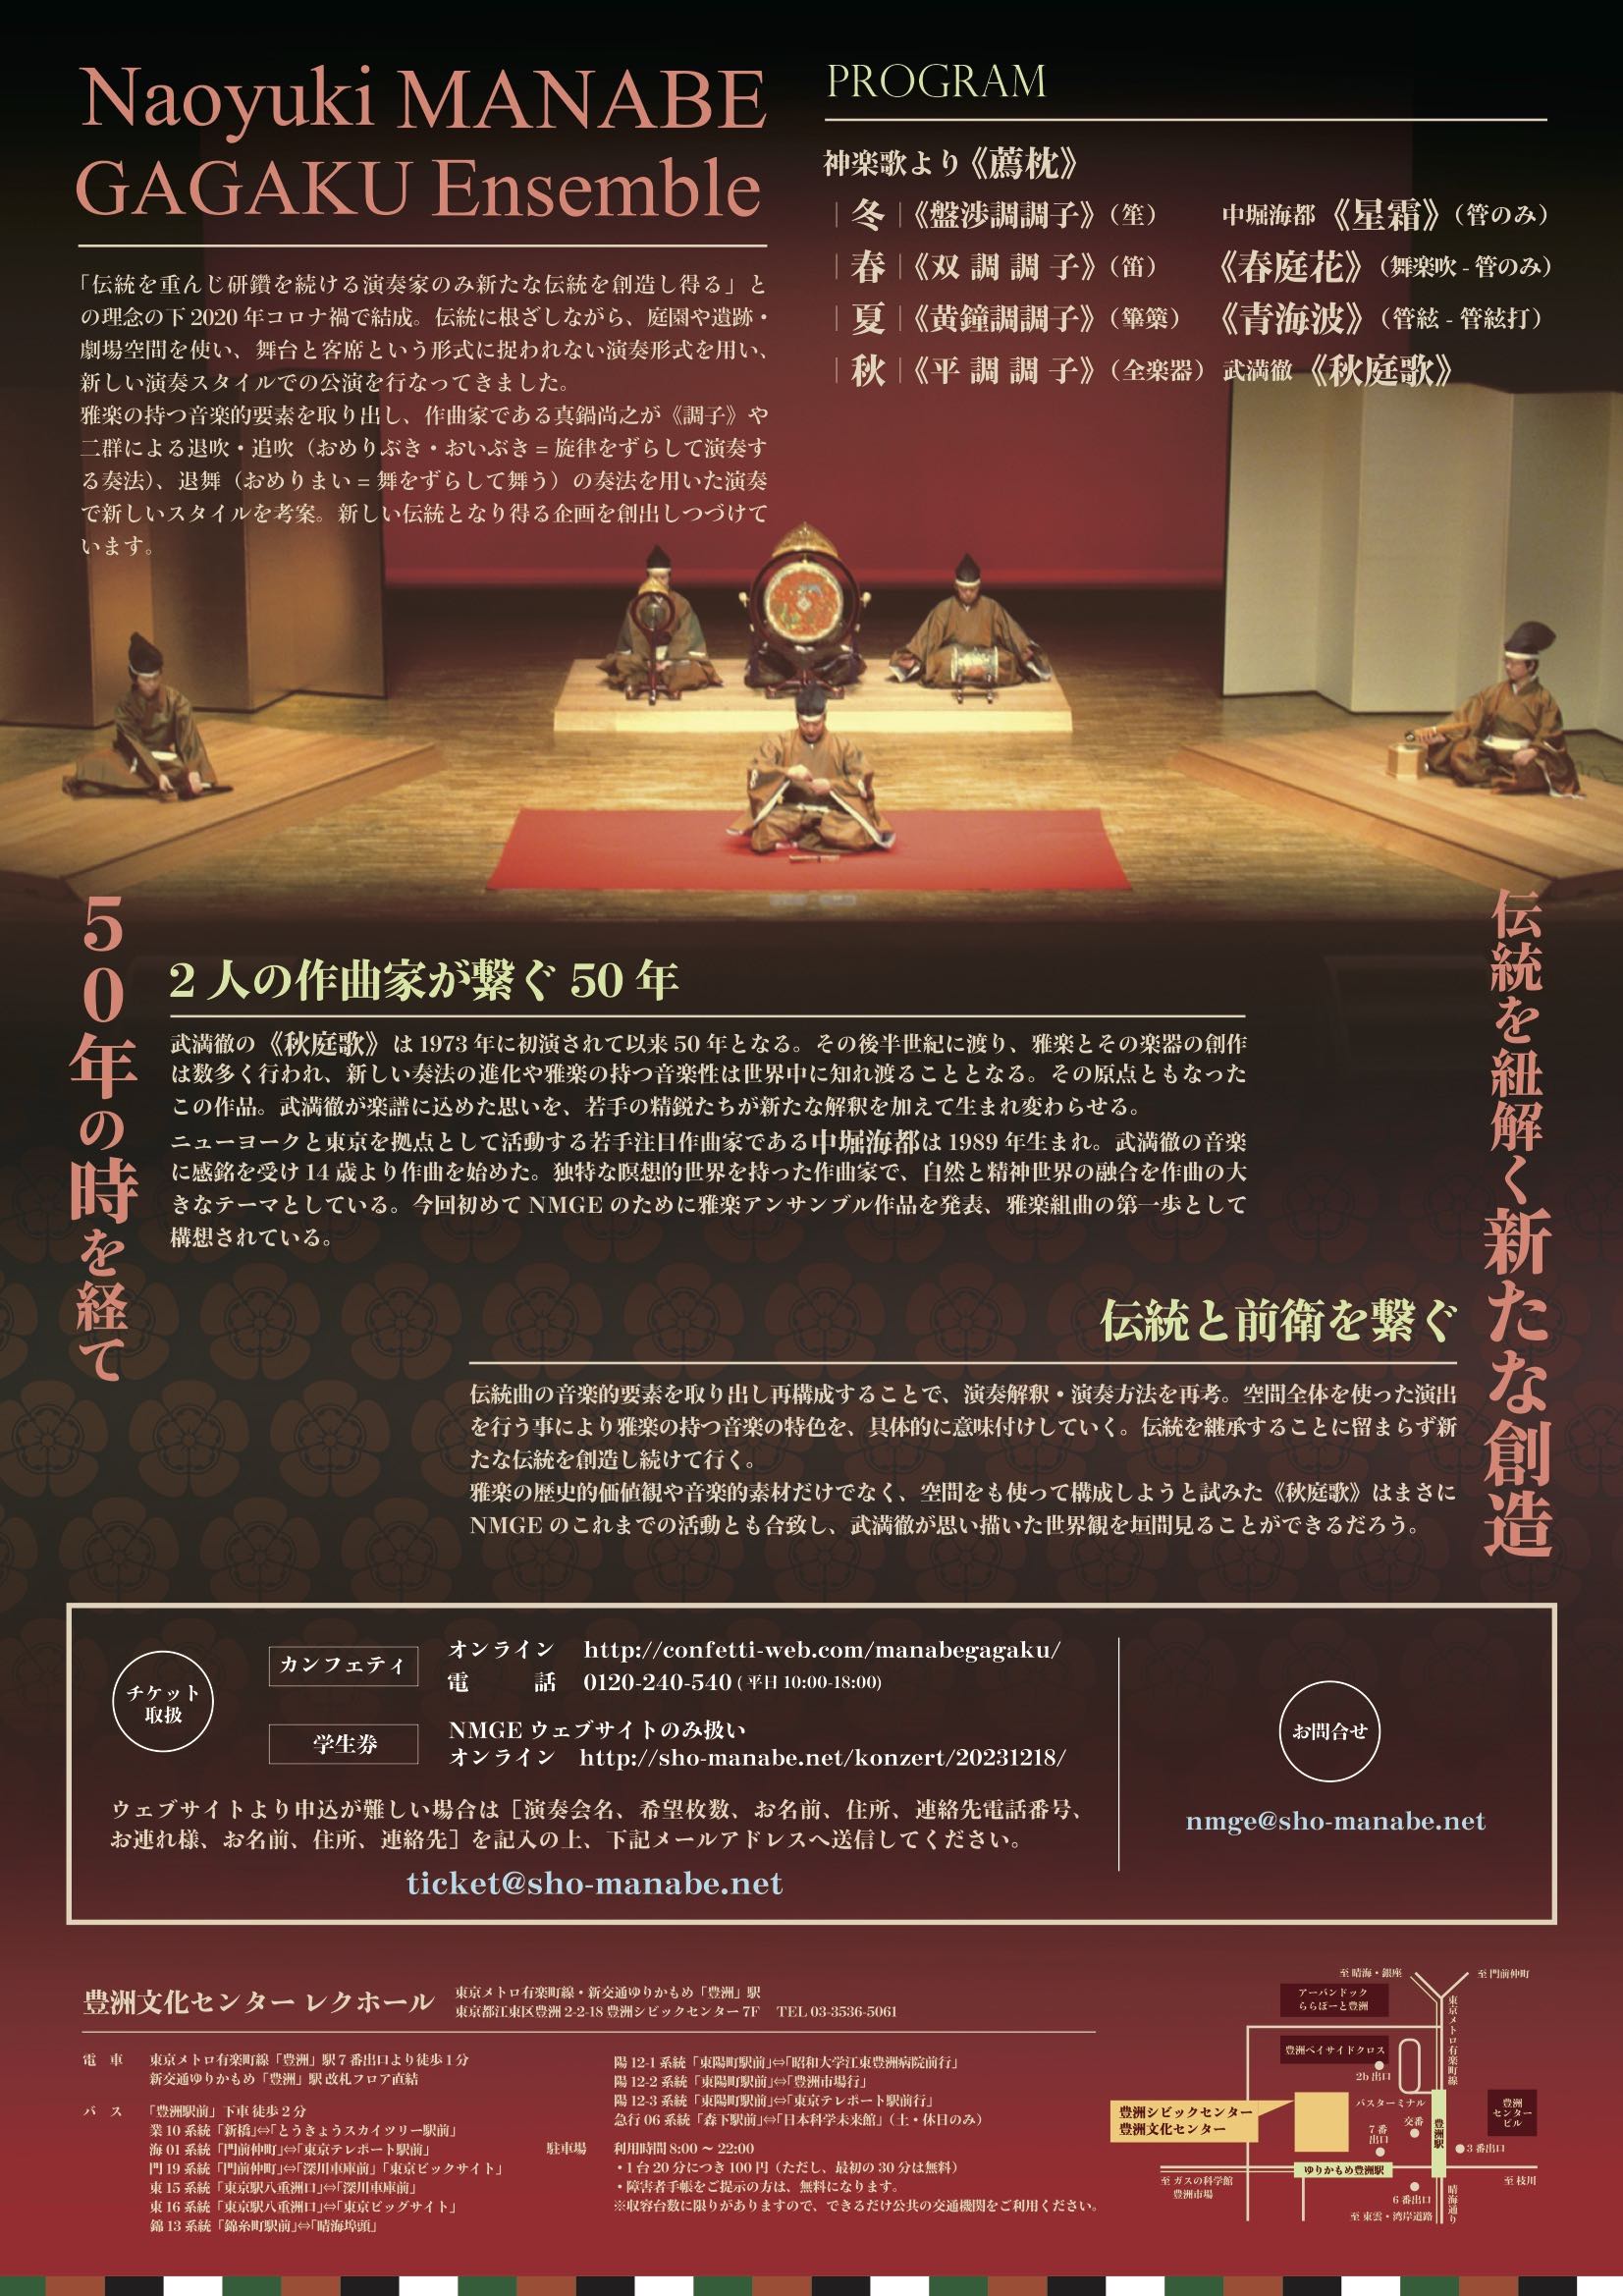 伝統と革新 〜古典を紐解き、未来の伝統を創造する〜 – Naoyuki Manabe Website